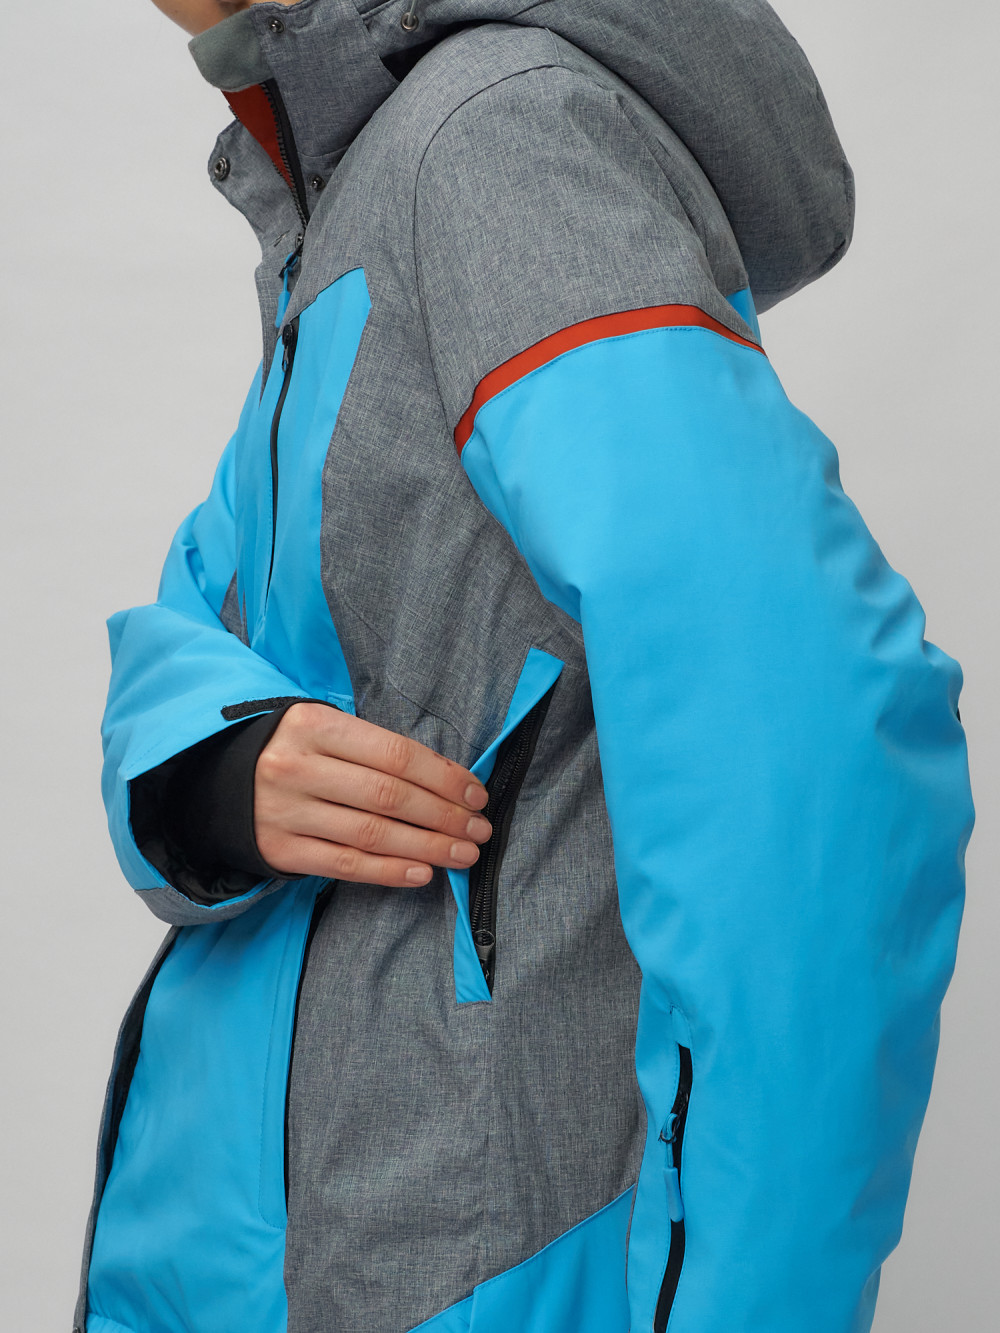 Купить горнолыжный костюм женский большого размера оптом недорого в Москве 02272-3S 1